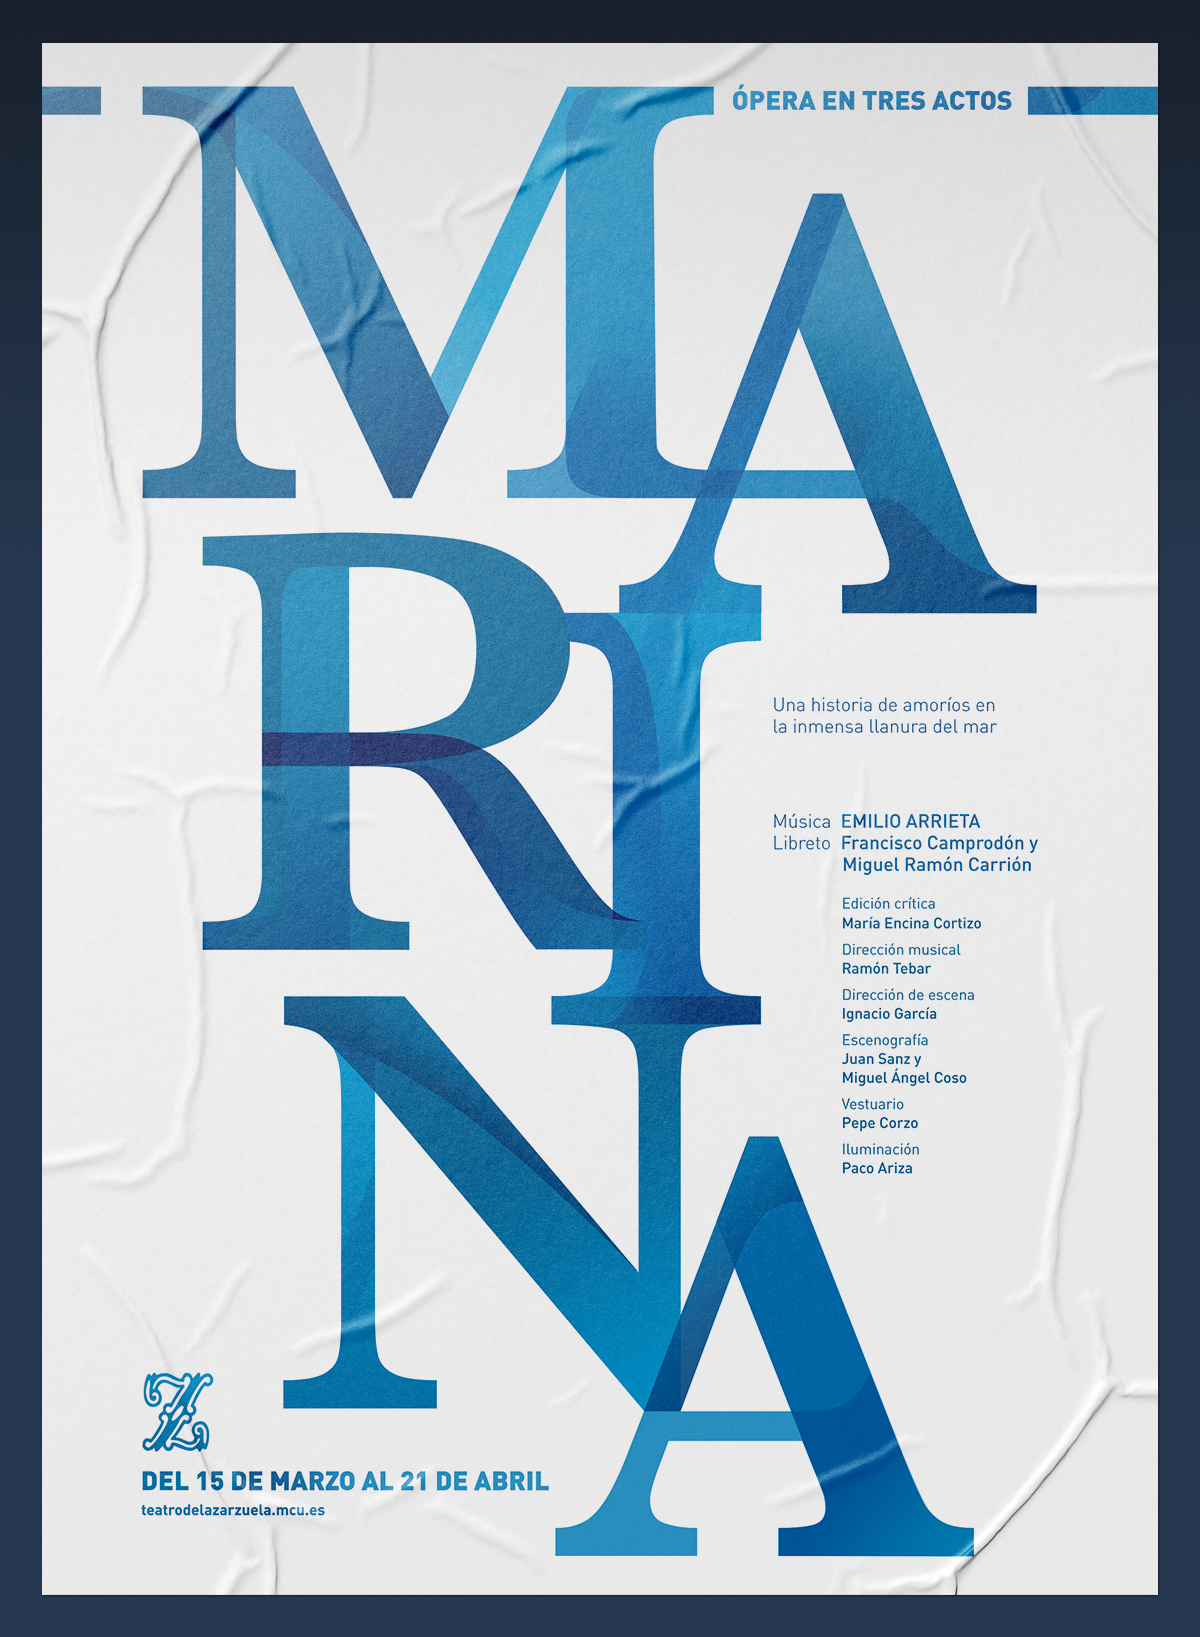 Propuesta tipográfica para el cartel de la ópera "Marina", del Teatro de la Zarzuela. Tea for two - diseño publicitario.